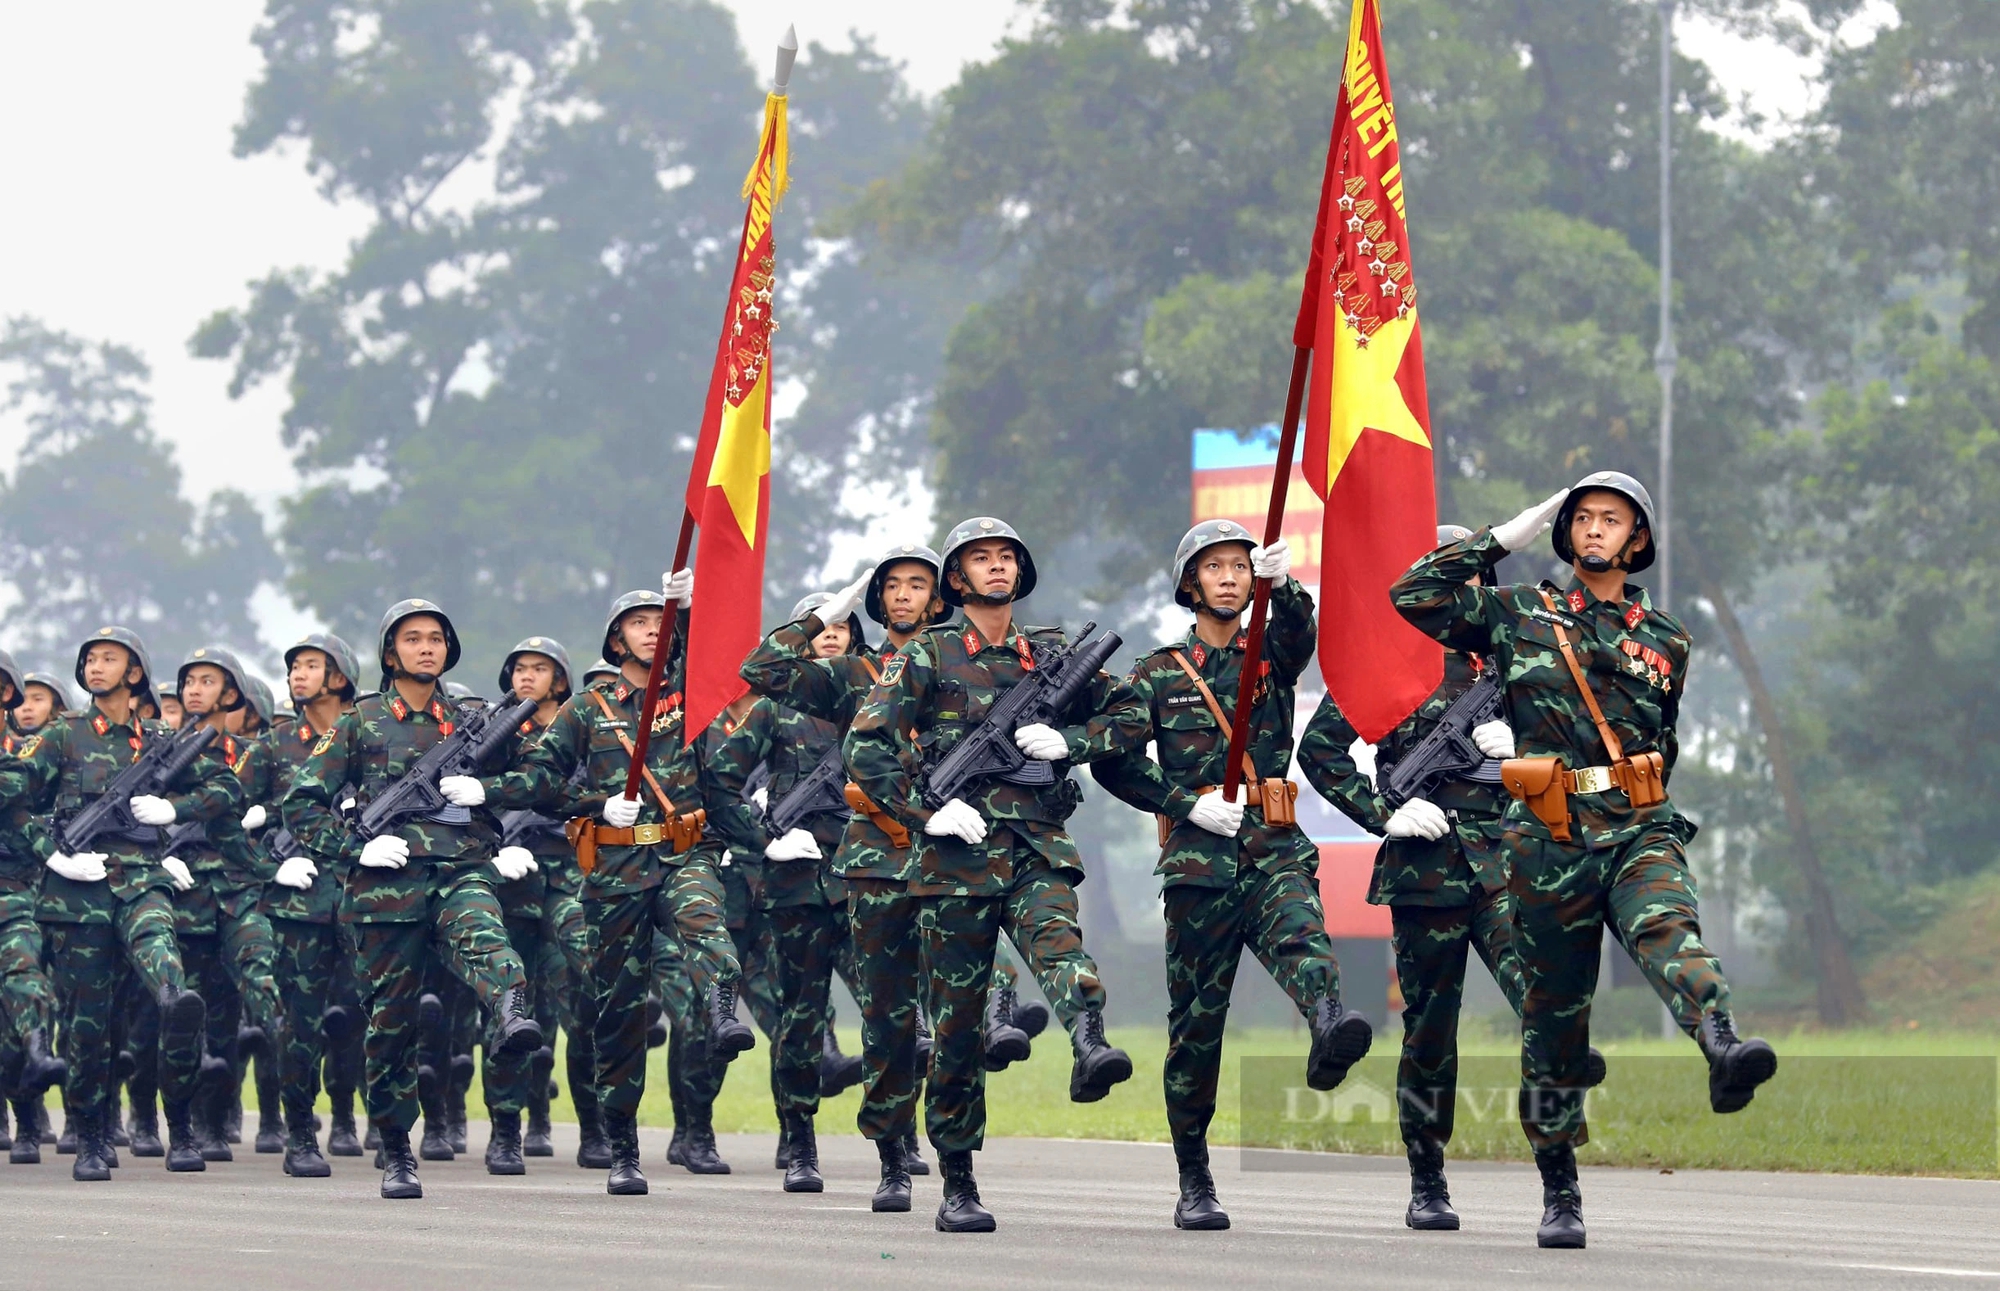 Hợp luyện diễu binh - diễu hành lần cuối, 9 máy bay trực thăng bay trên bầu trời Hà Nội- Ảnh 12.